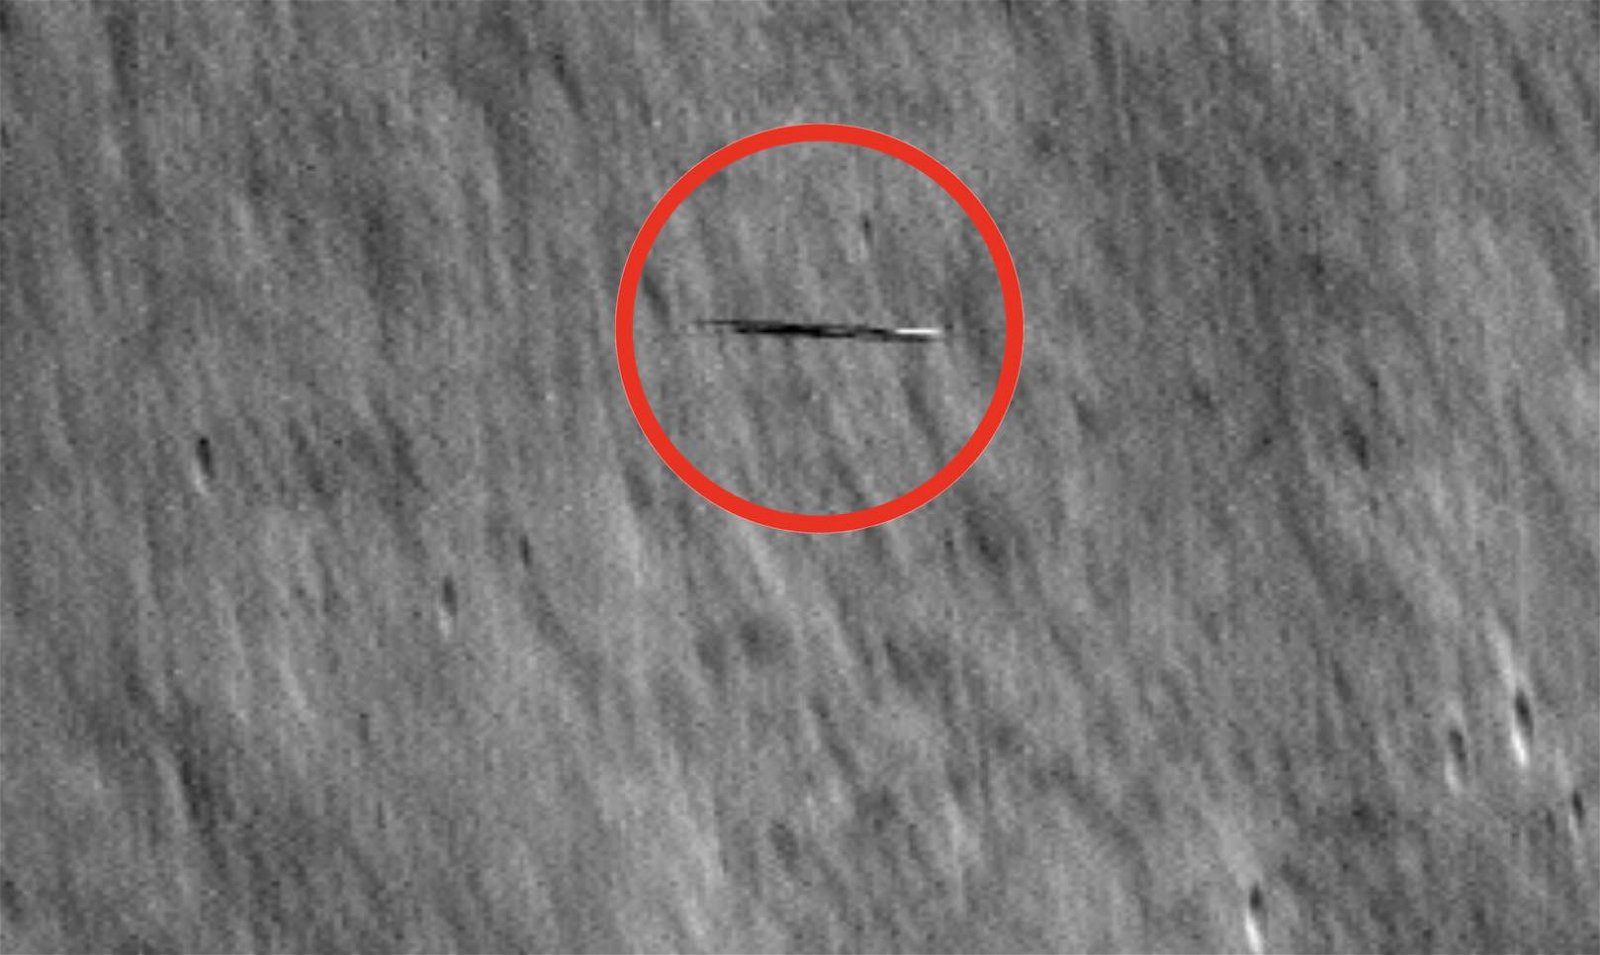 Vea lo que acaba de capturar el Lunar Reconnaissance Orbiter de la NASA acelerando hacia la órbita alrededor de la Luna